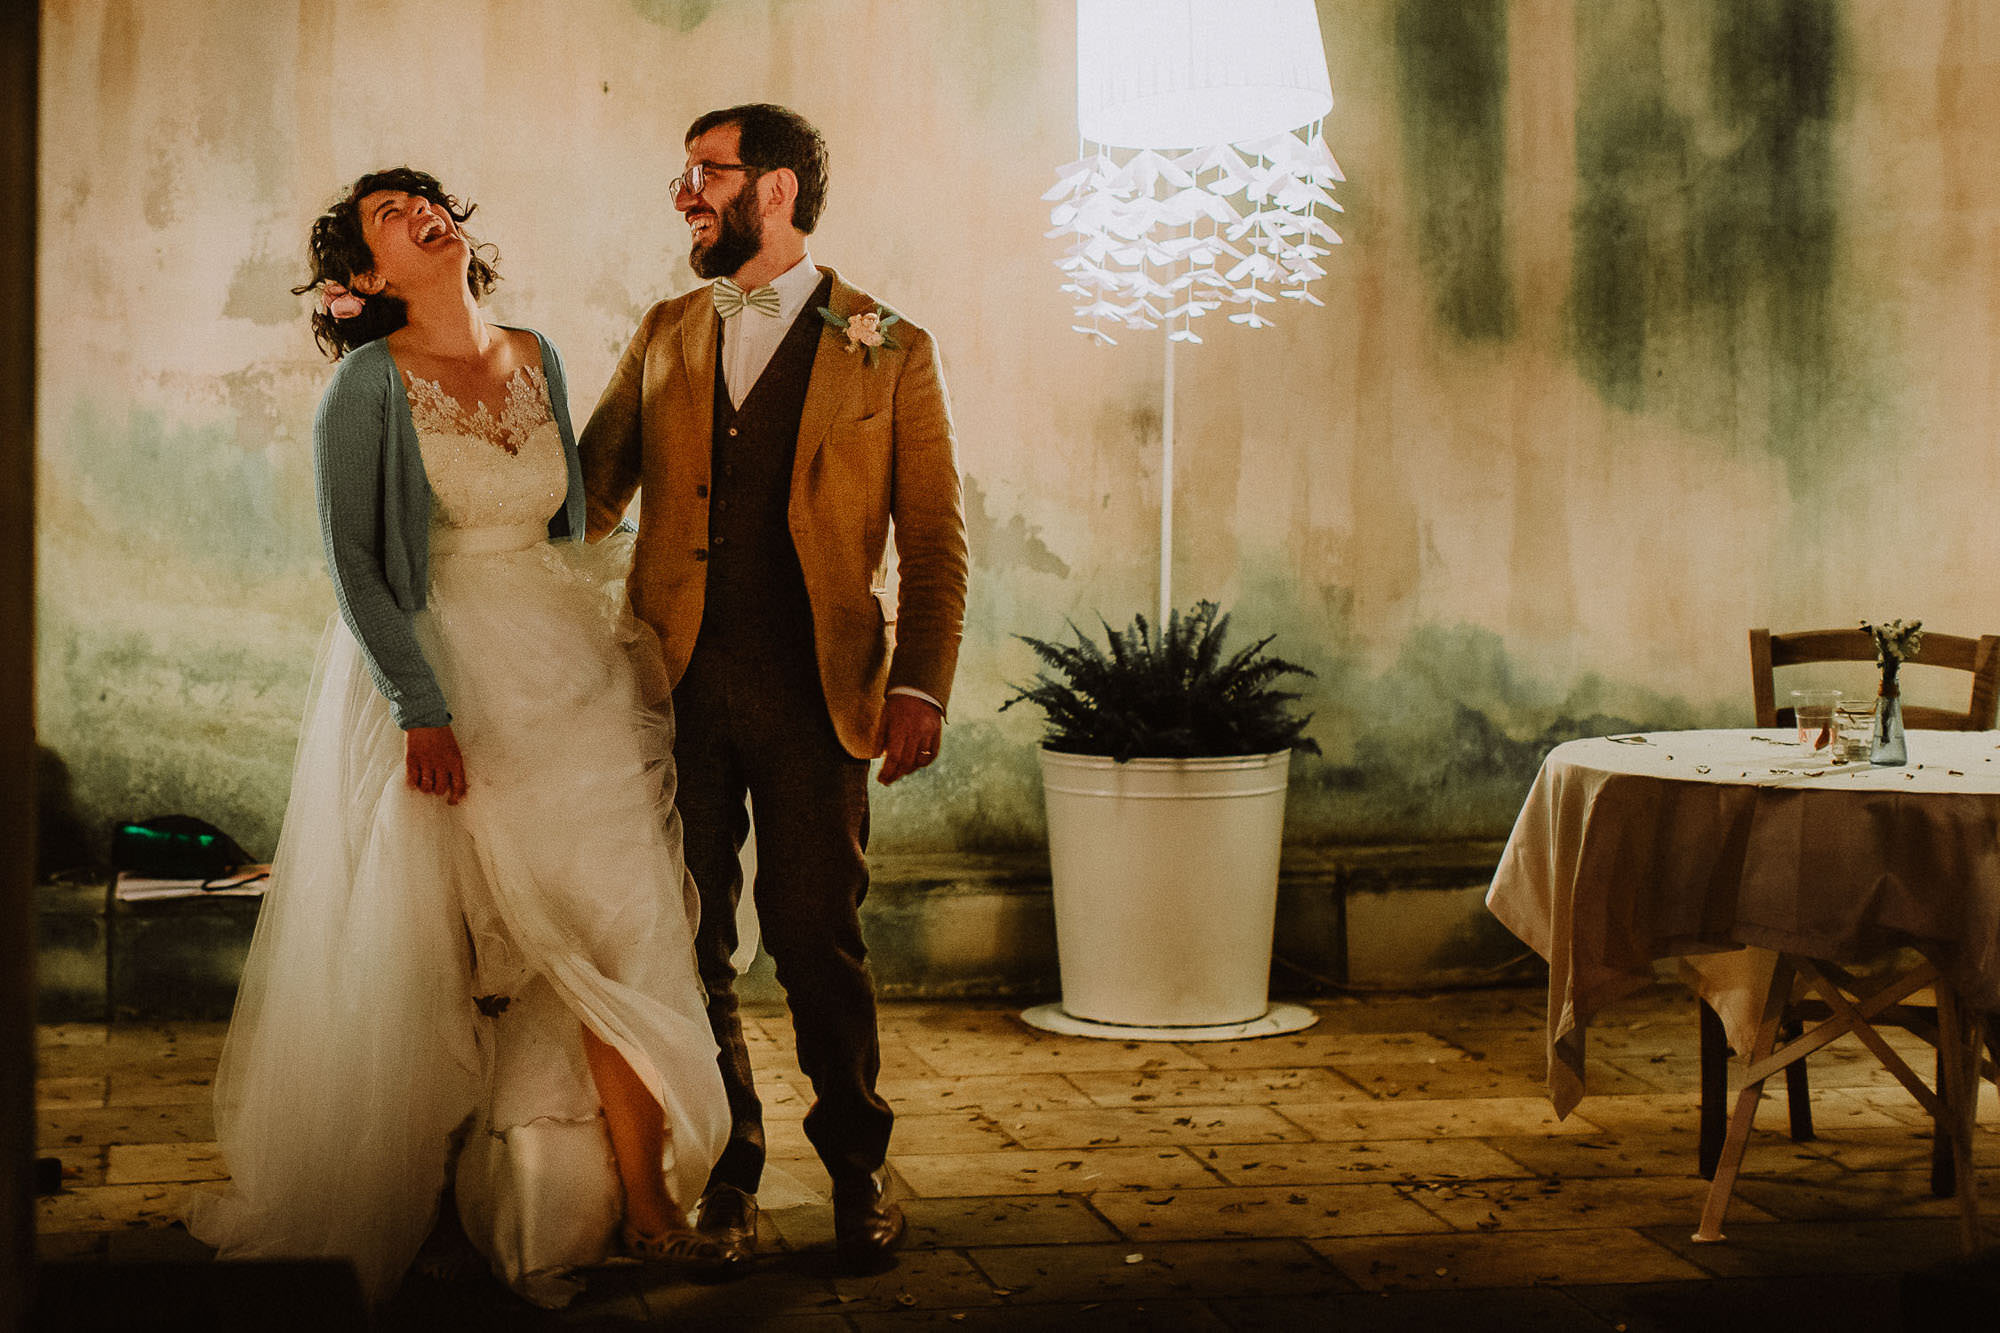 fotografo reportage artistico matrimonio bari taranto lecce ostuni fasano country